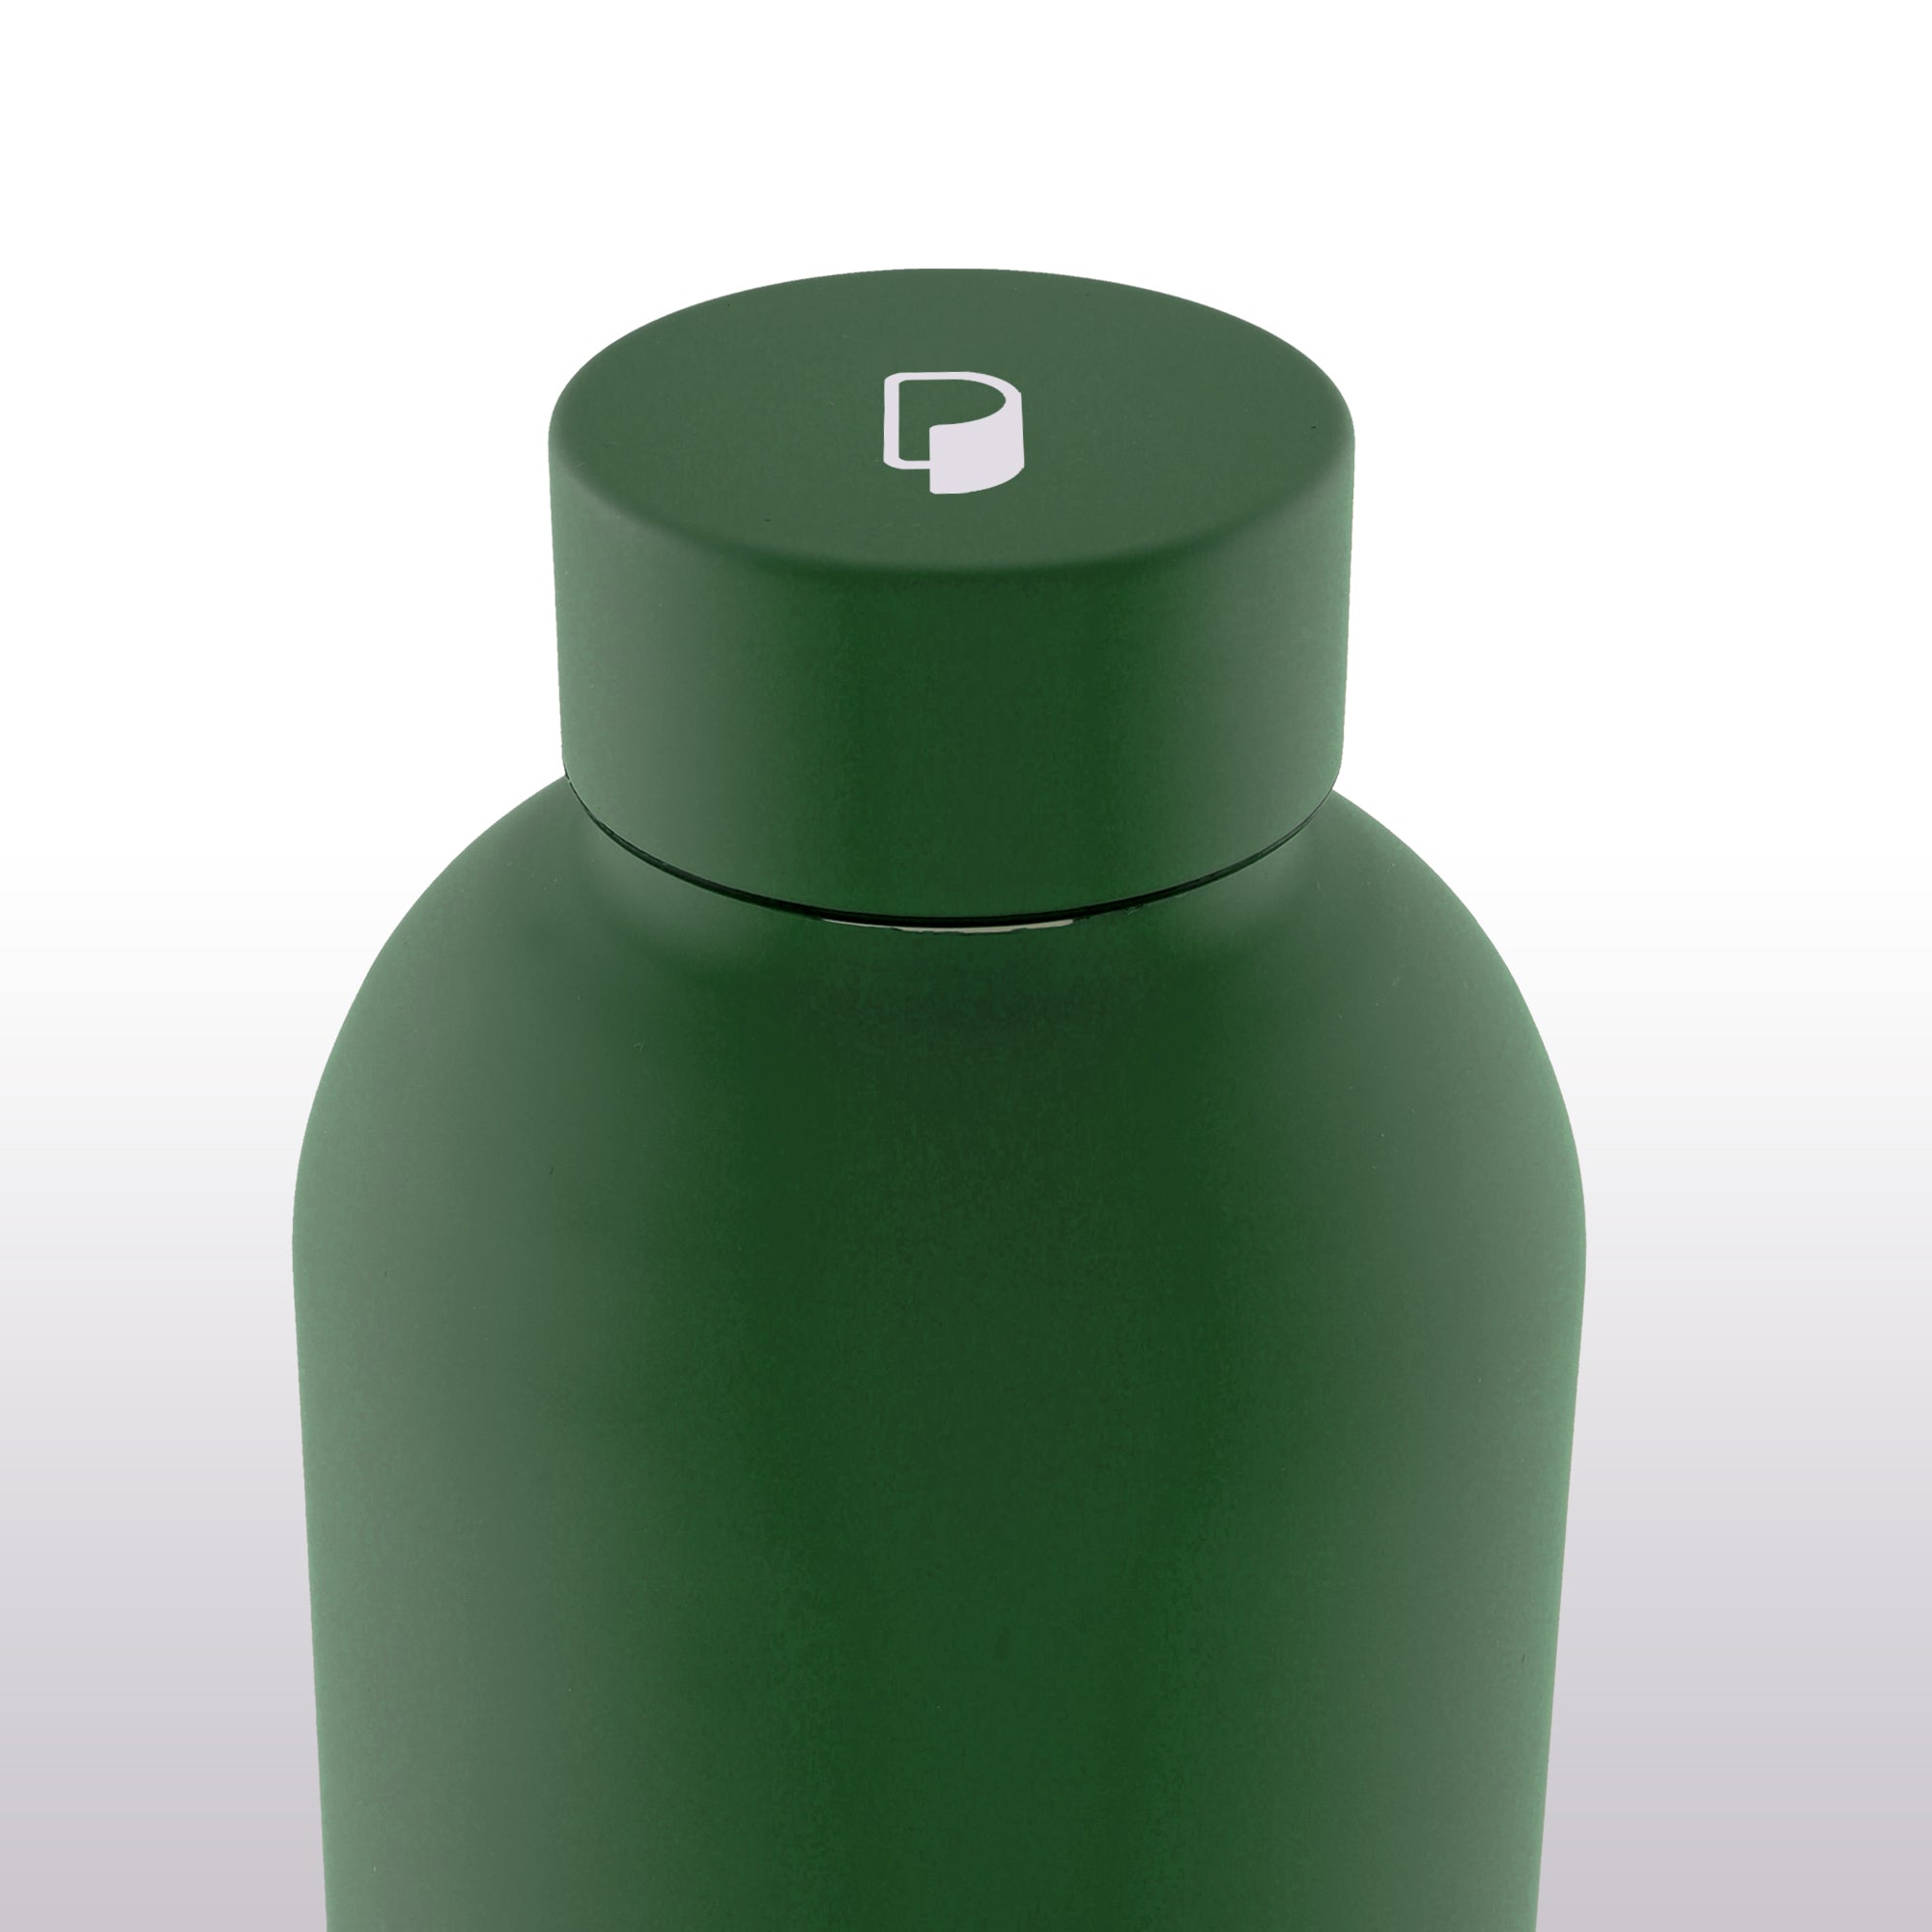 冷熱保溫瓶 [藻綠] (500ml)